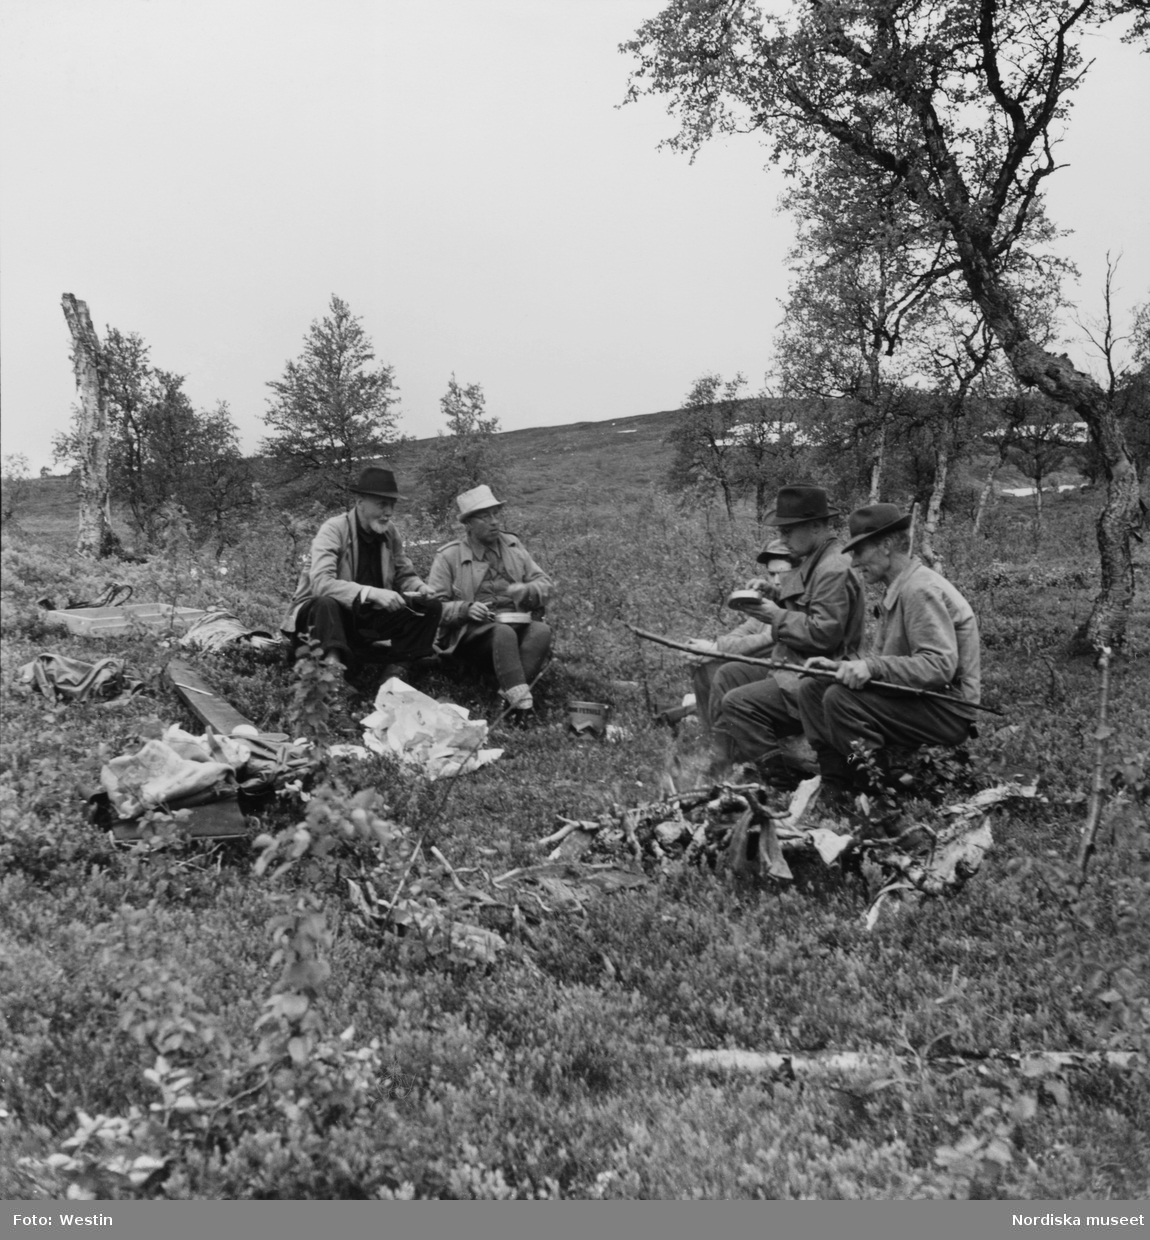 Från utgrävningen av "stalotomterna" vid Brantsfjället. Fem män vilar och äter matsäck. Under Nordiska museets Lappmarksundersökning.